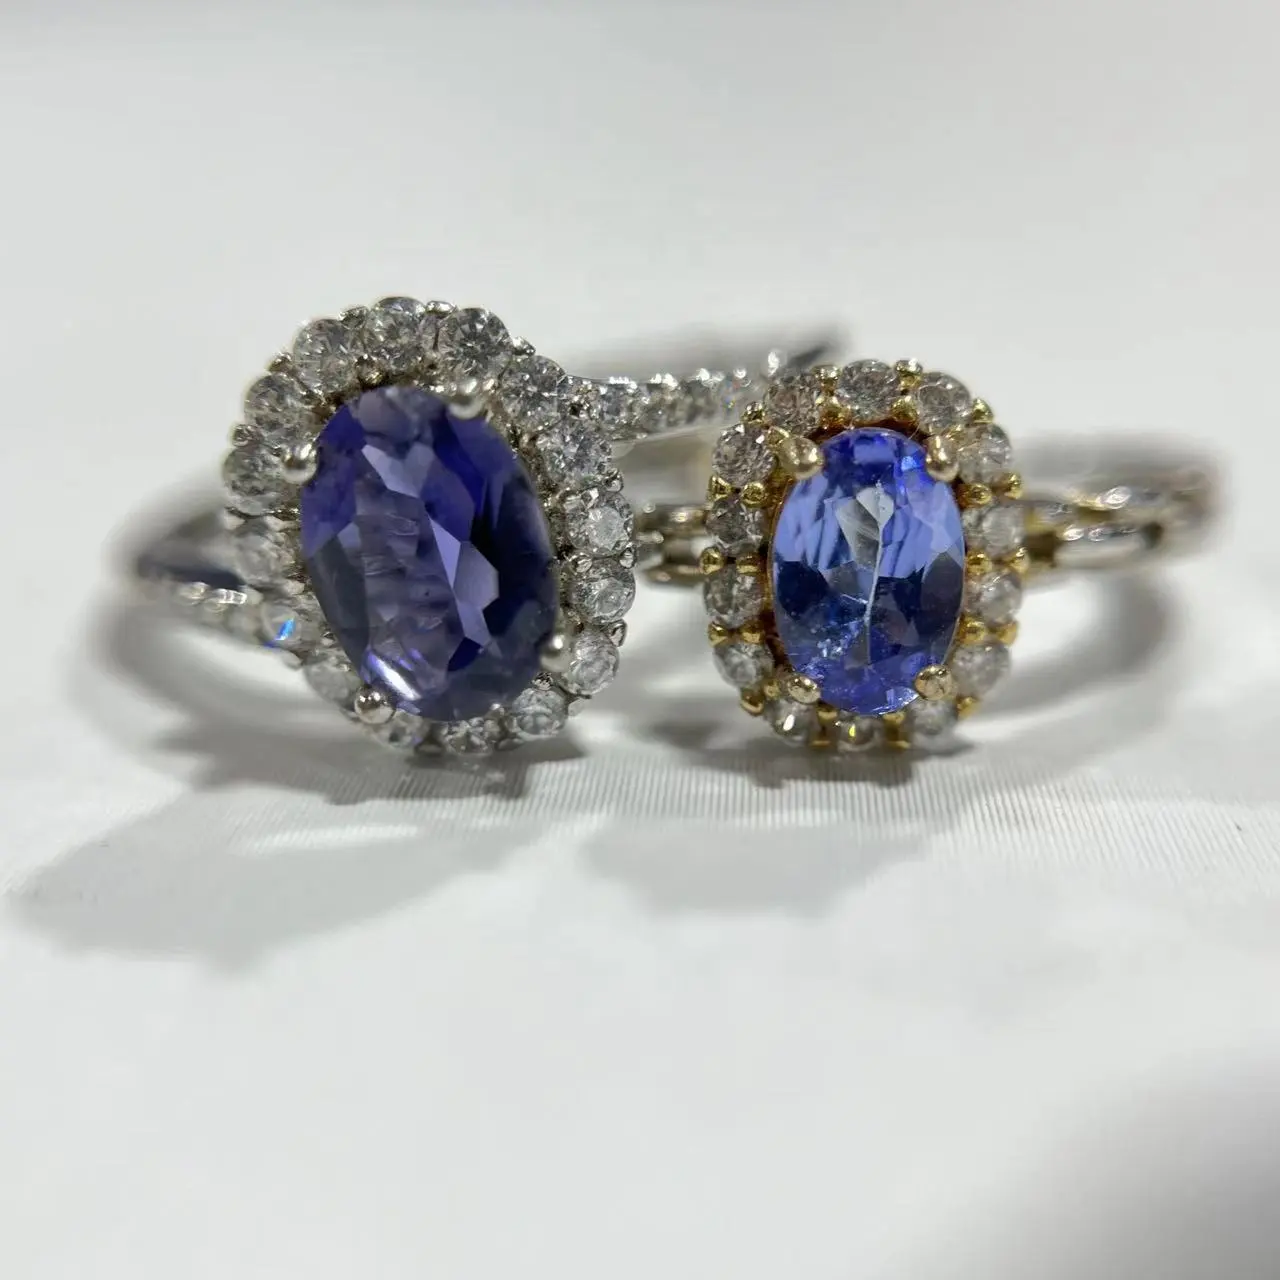 Grosir batu permata alami perhiasan S925 cincin kristal Tanzanite cincin untuk wanita dan pria dan hadiah